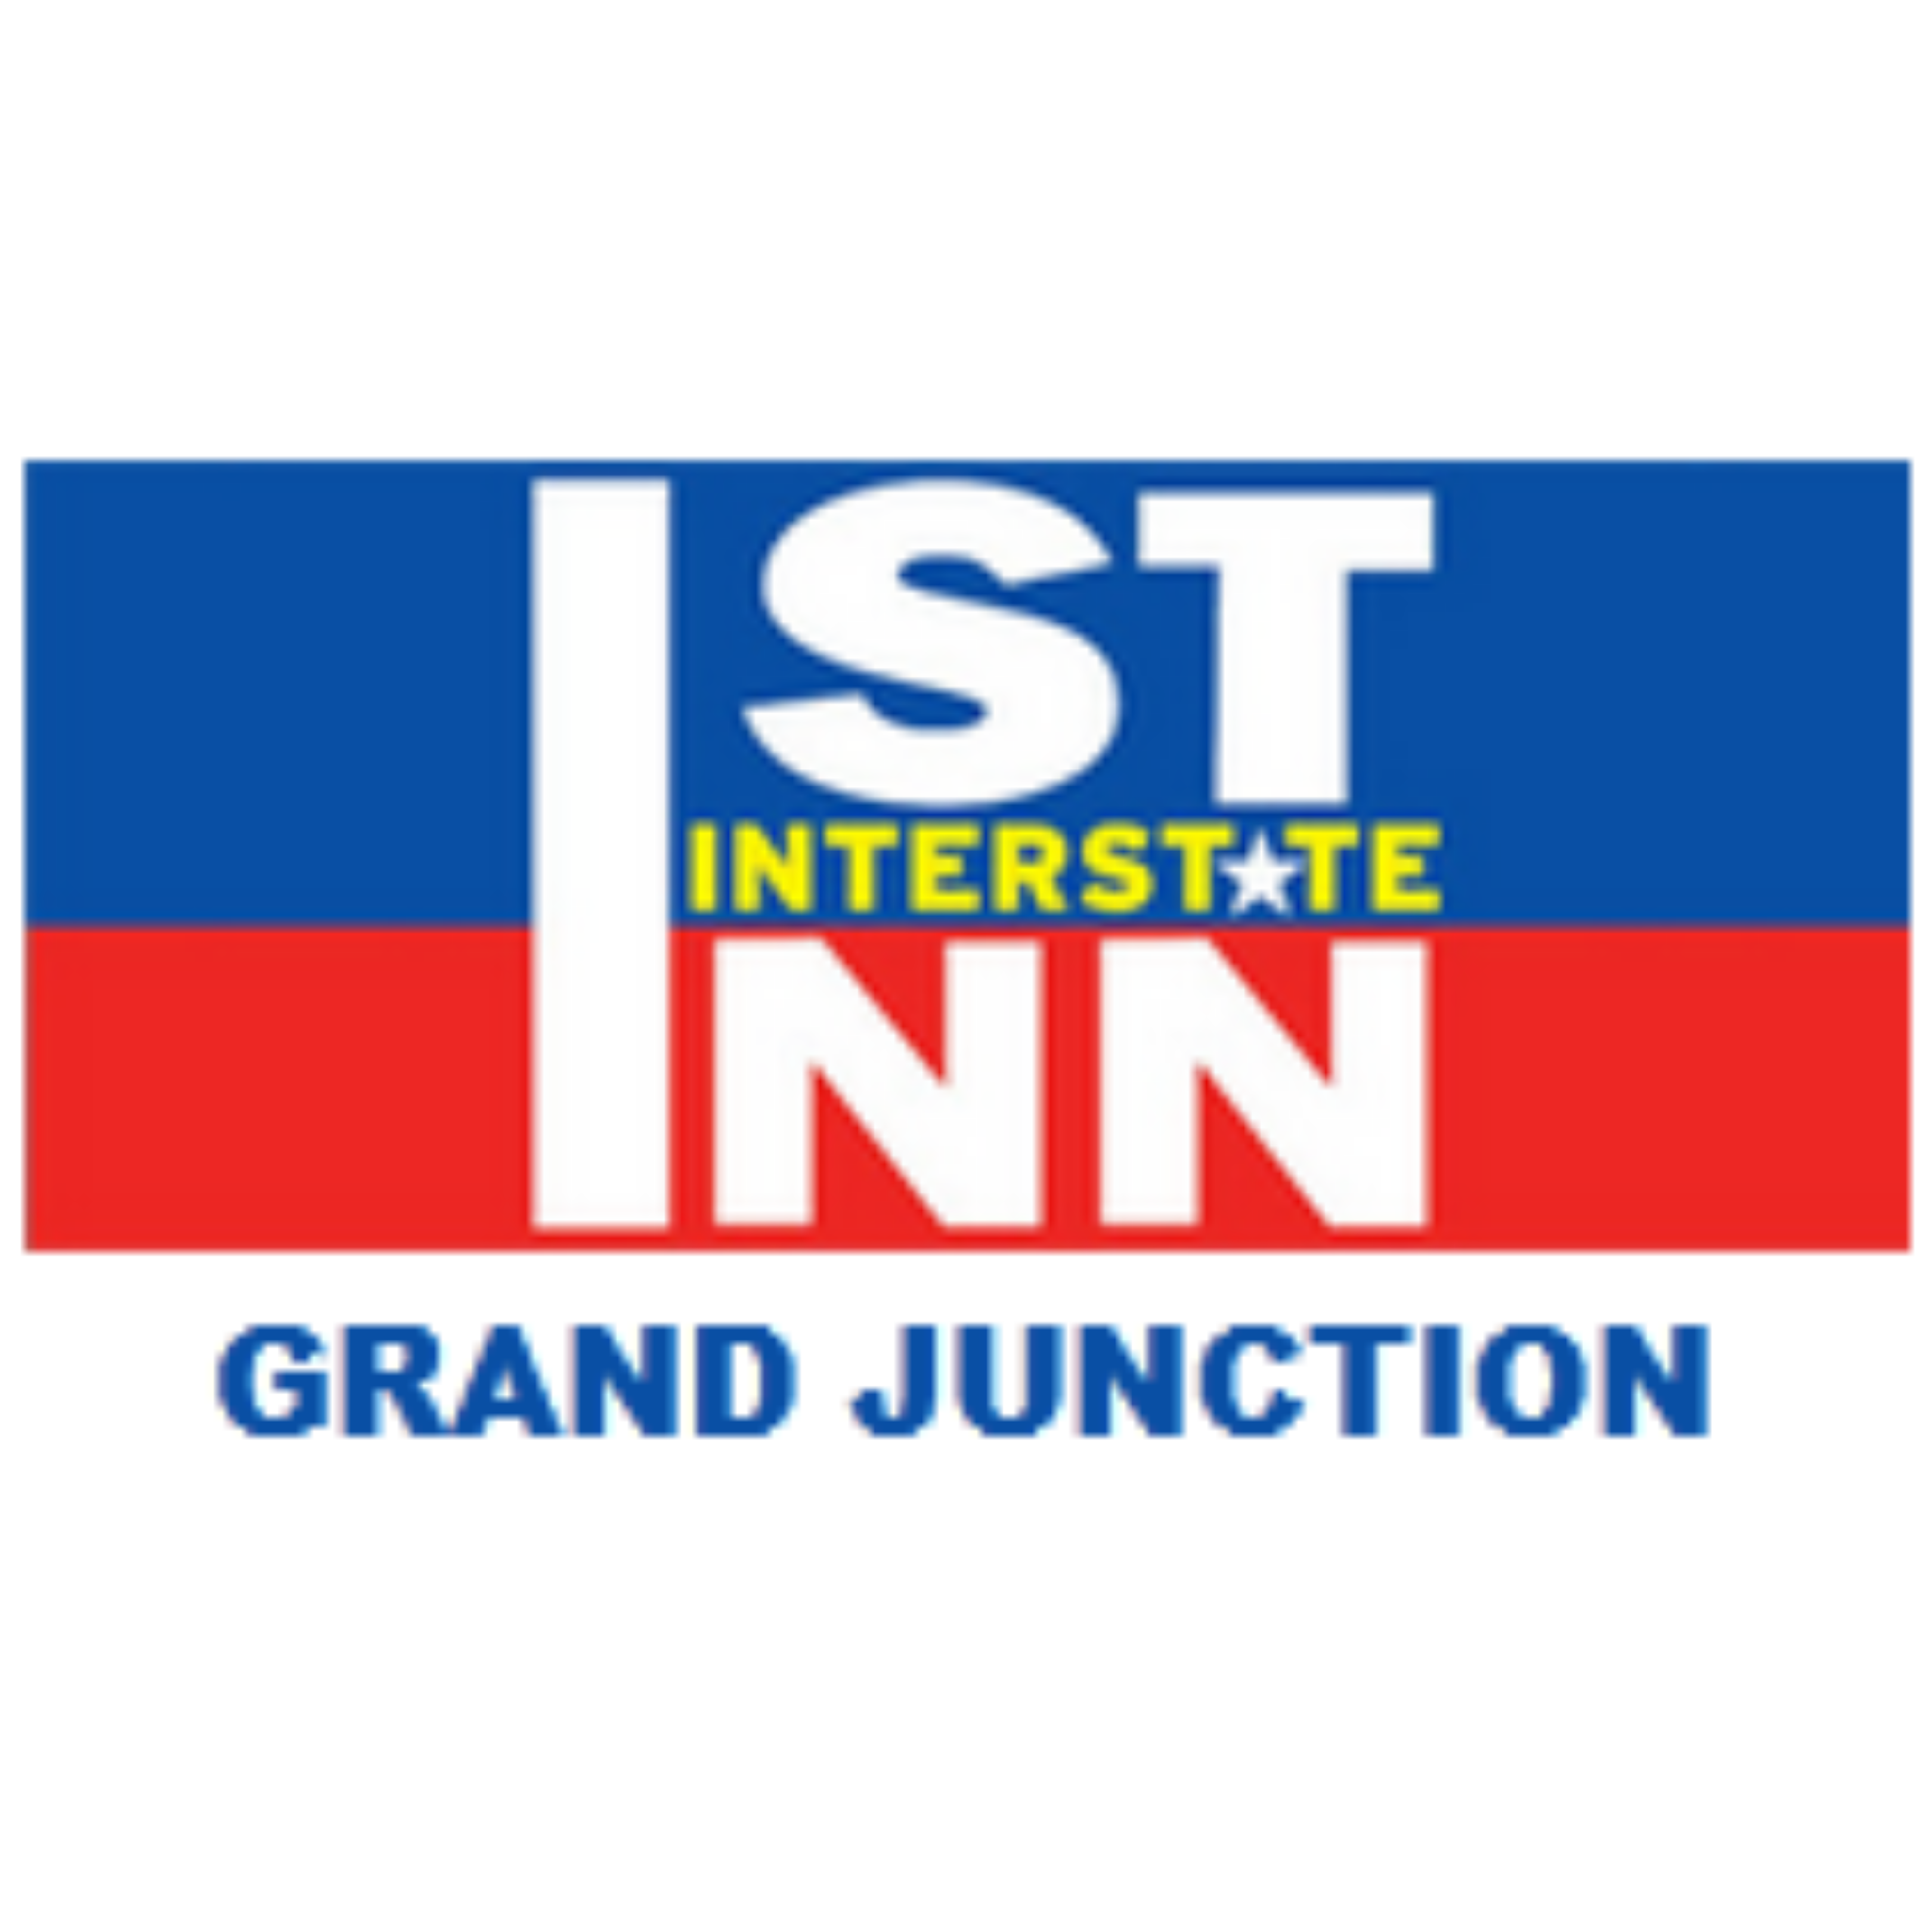 1st Interstate Inn Grand Junction